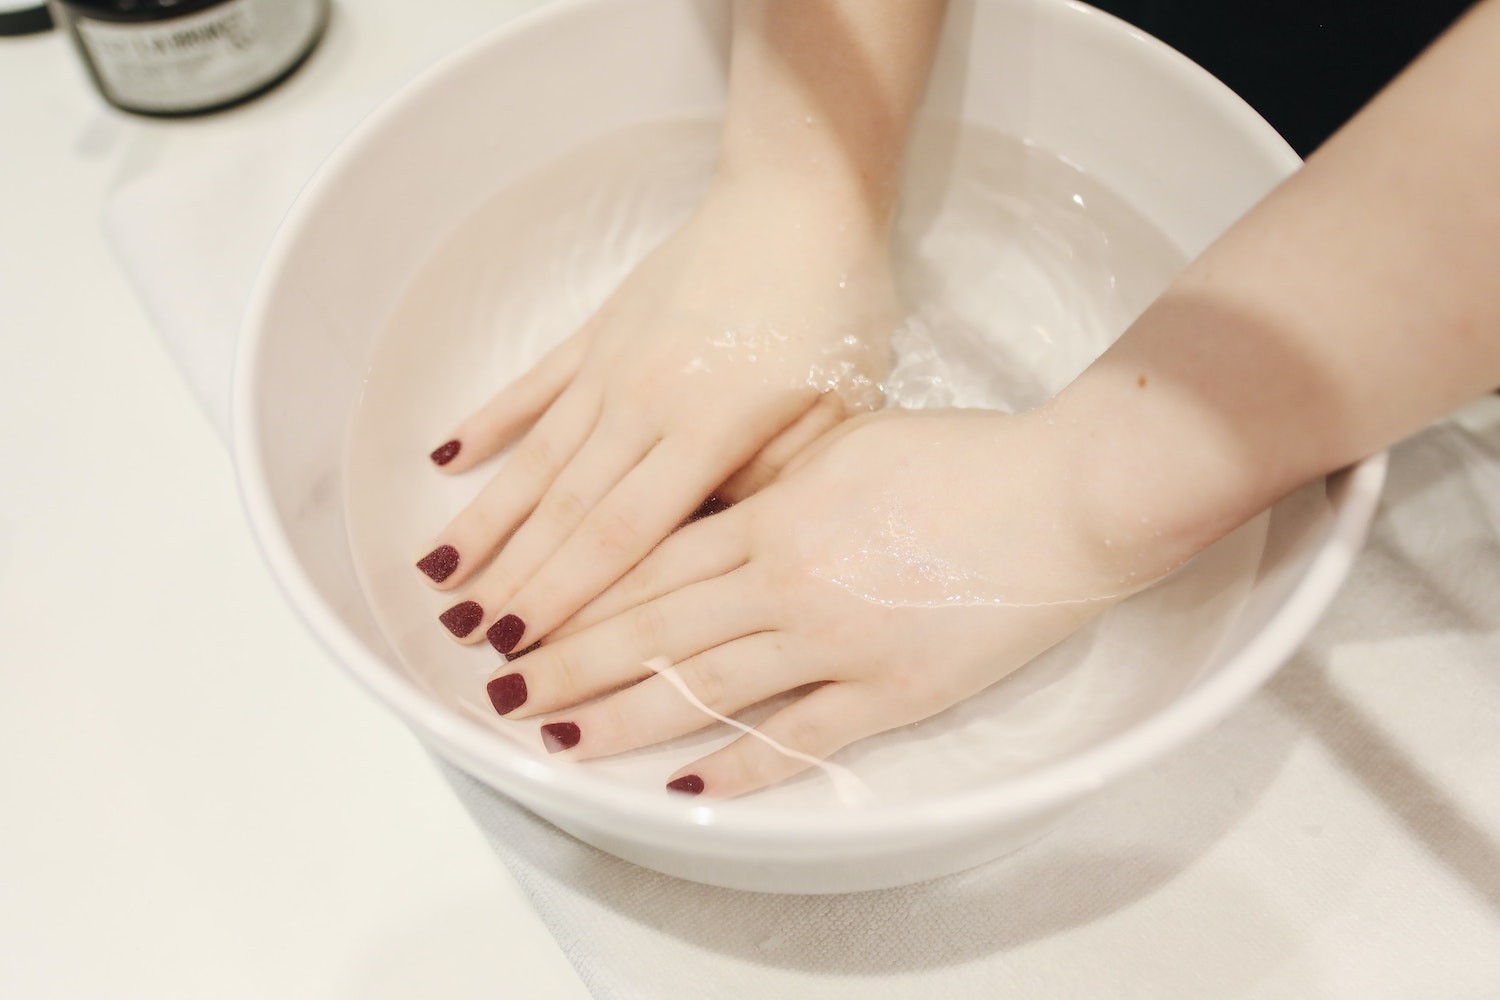 Colocar as mãos em um balde de água fria pode ajudar a controlar o impulso (Foto: Pexels / Polina Tankilevitch /CreativeCommons)